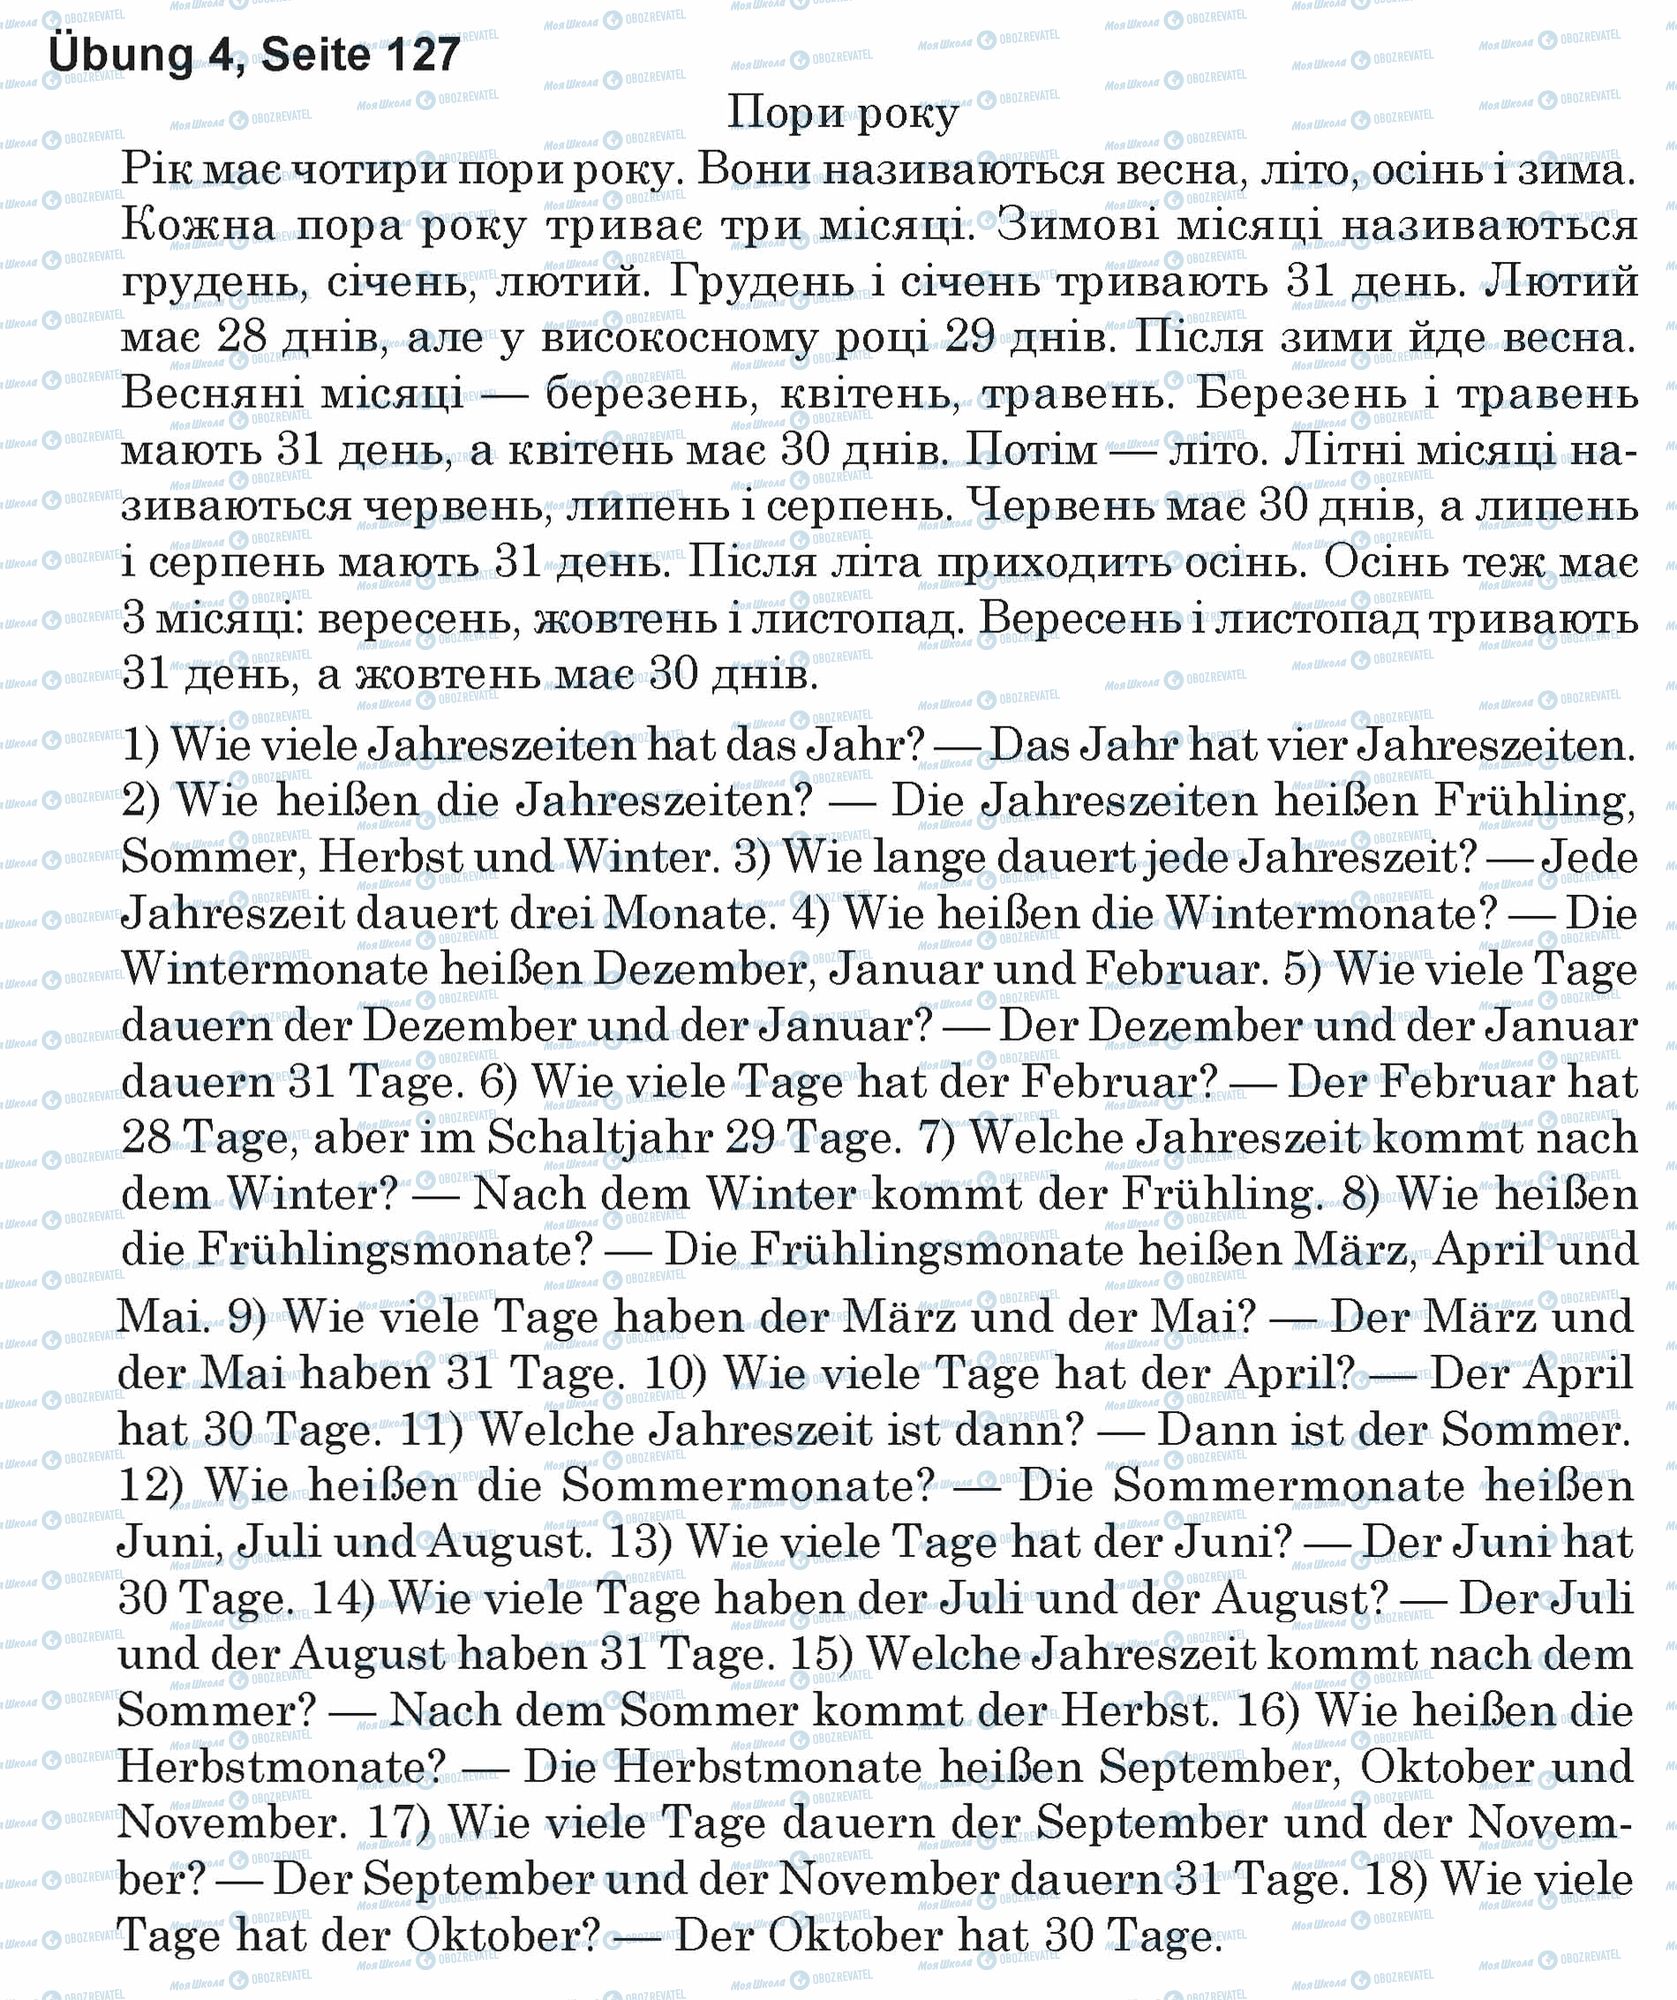 ГДЗ Немецкий язык 5 класс страница Ubung 4, Seite 127